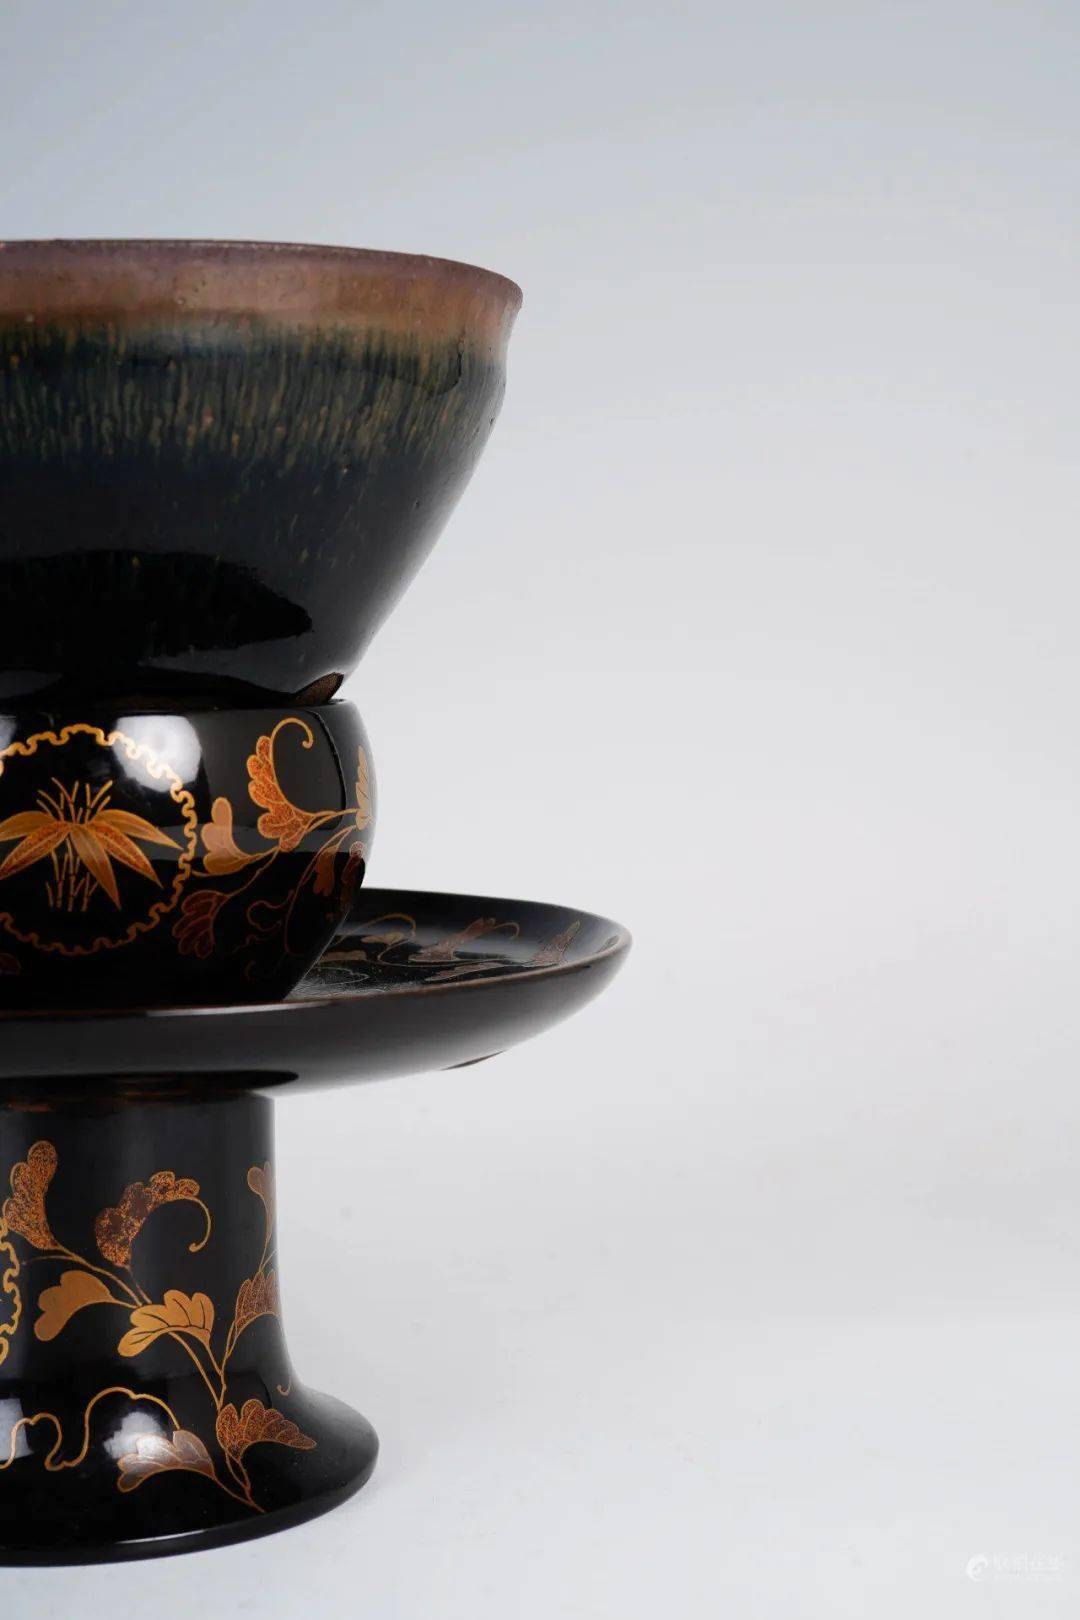 日本中部国际拍卖：一波茶盏古董雅器欣赏_手机搜狐网